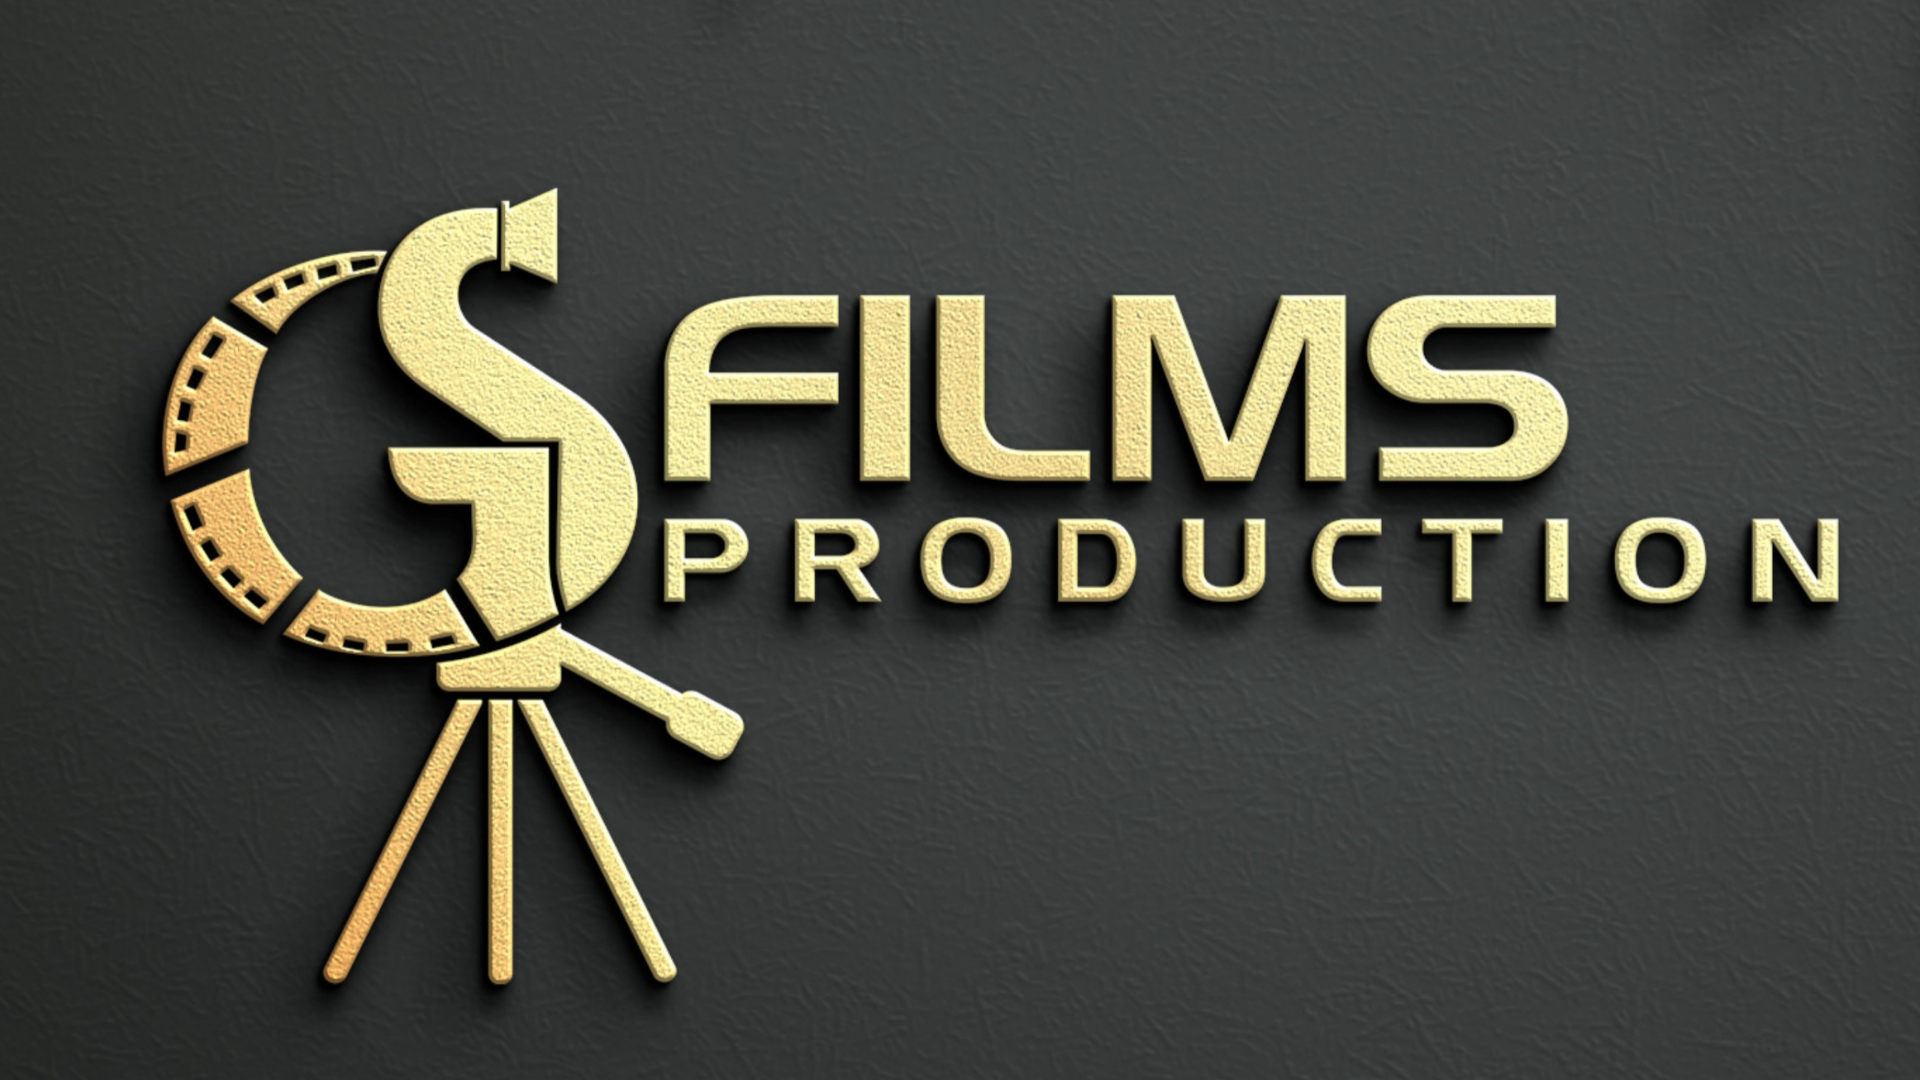 Gs film production logp